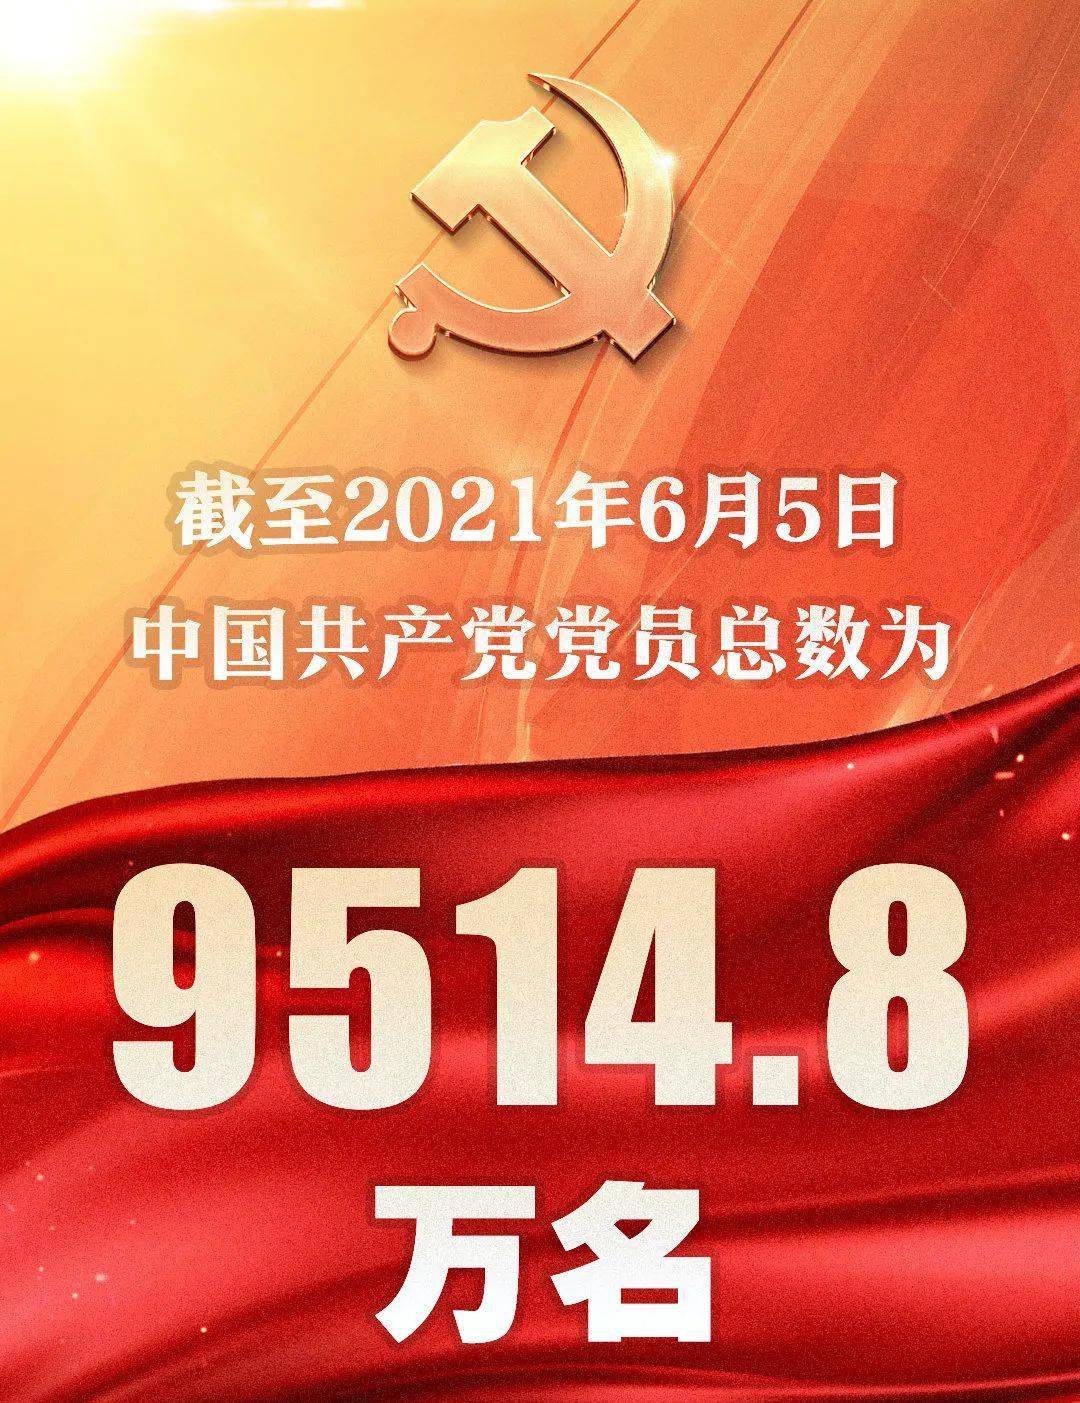 中国共产党党员总数9514.8万,广东三起疫情社区传播已阻断